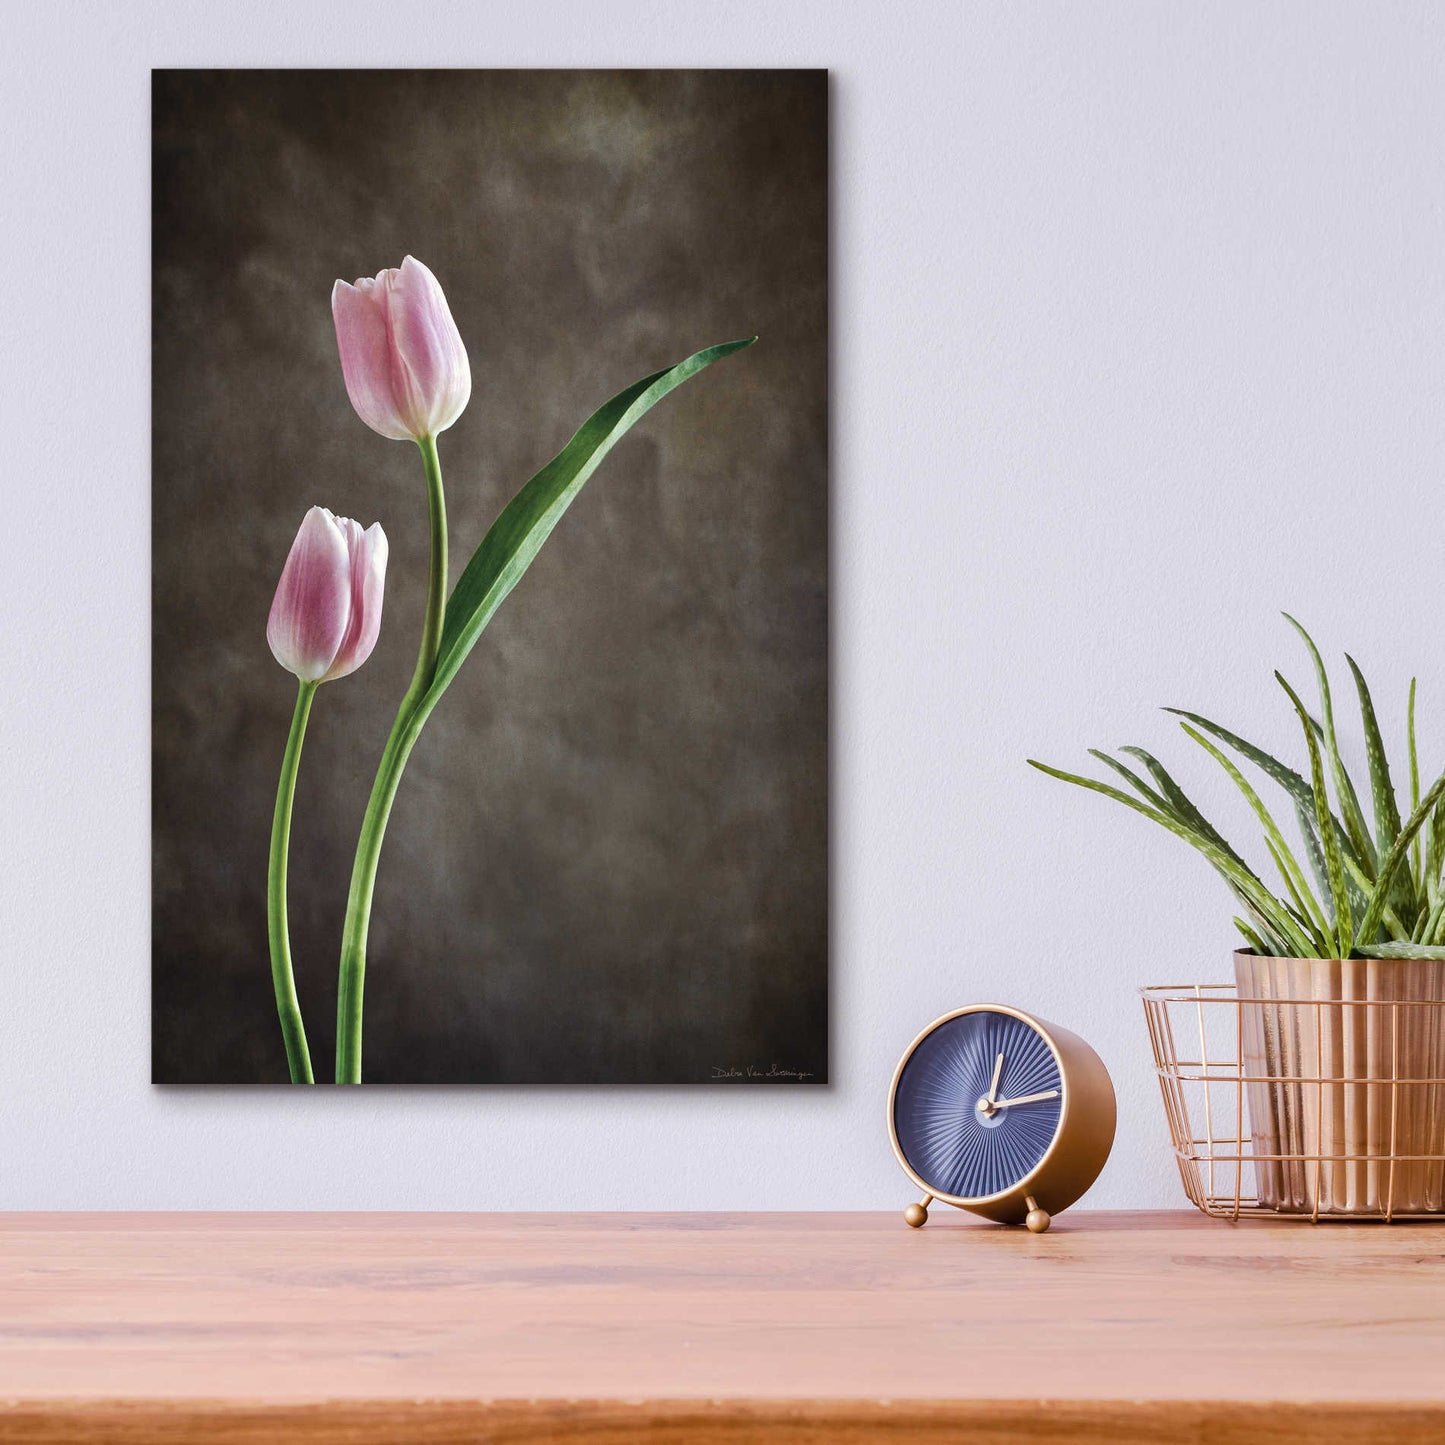 Epic Art 'Spring Tulips IV' by Debra Van Swearingen, Acrylic Glass Wall Art,12x16